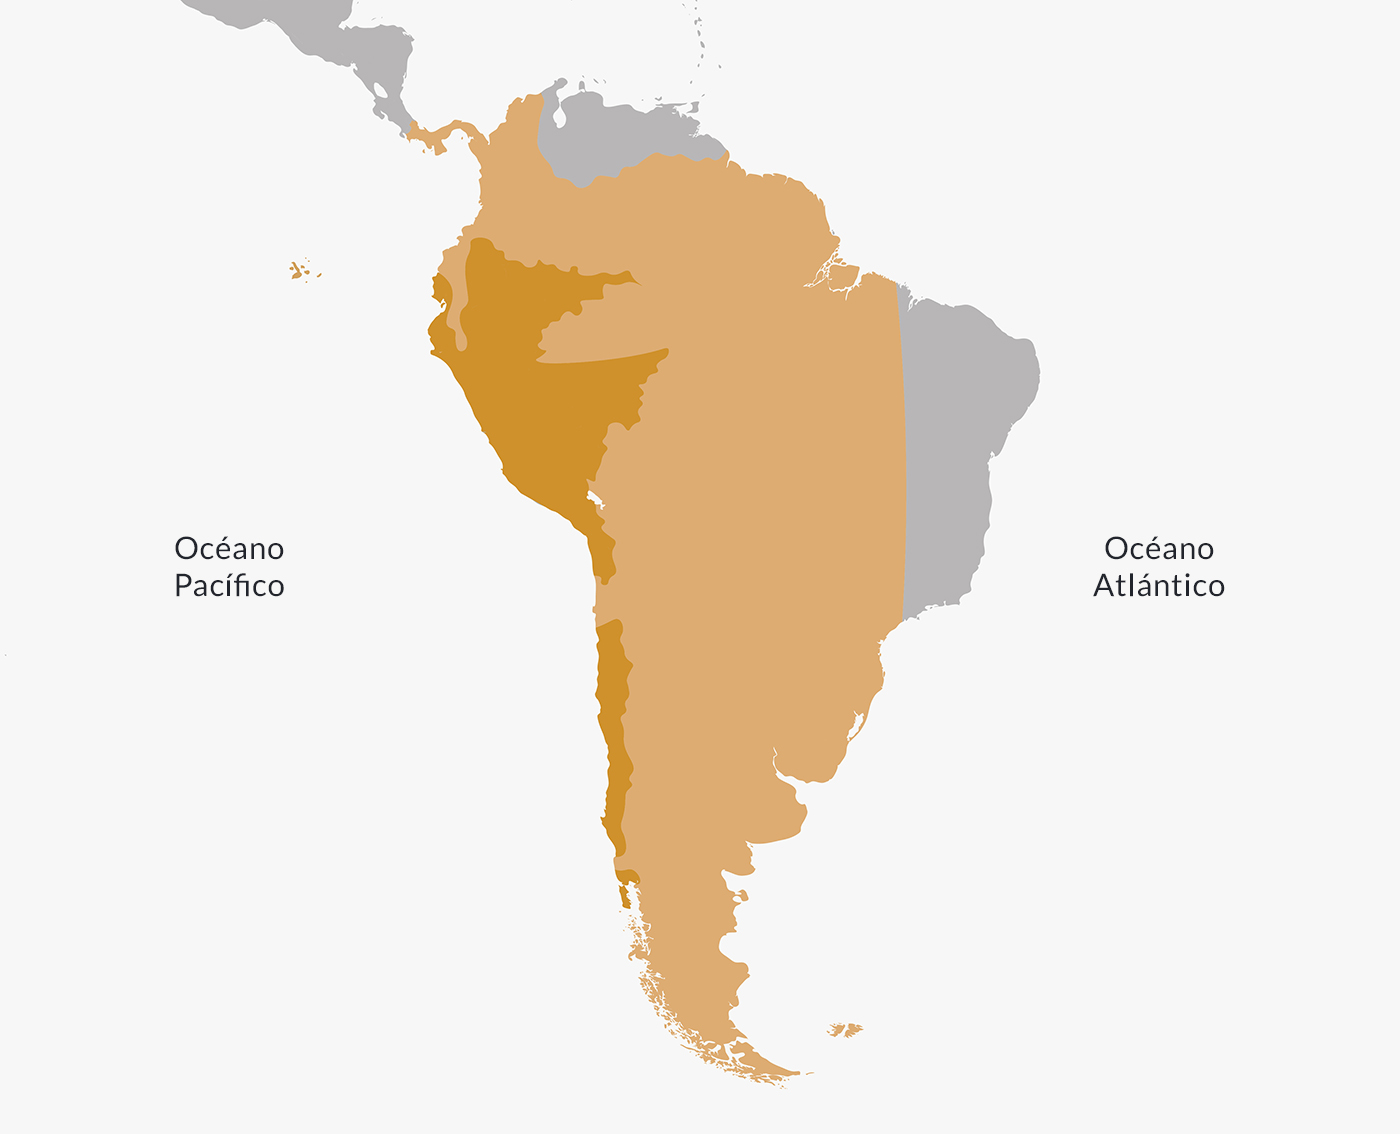 Territorio del virreinato del Perú. En color marrón claro al momento de su fundación, y en color marrón oscuro hacia 1790.